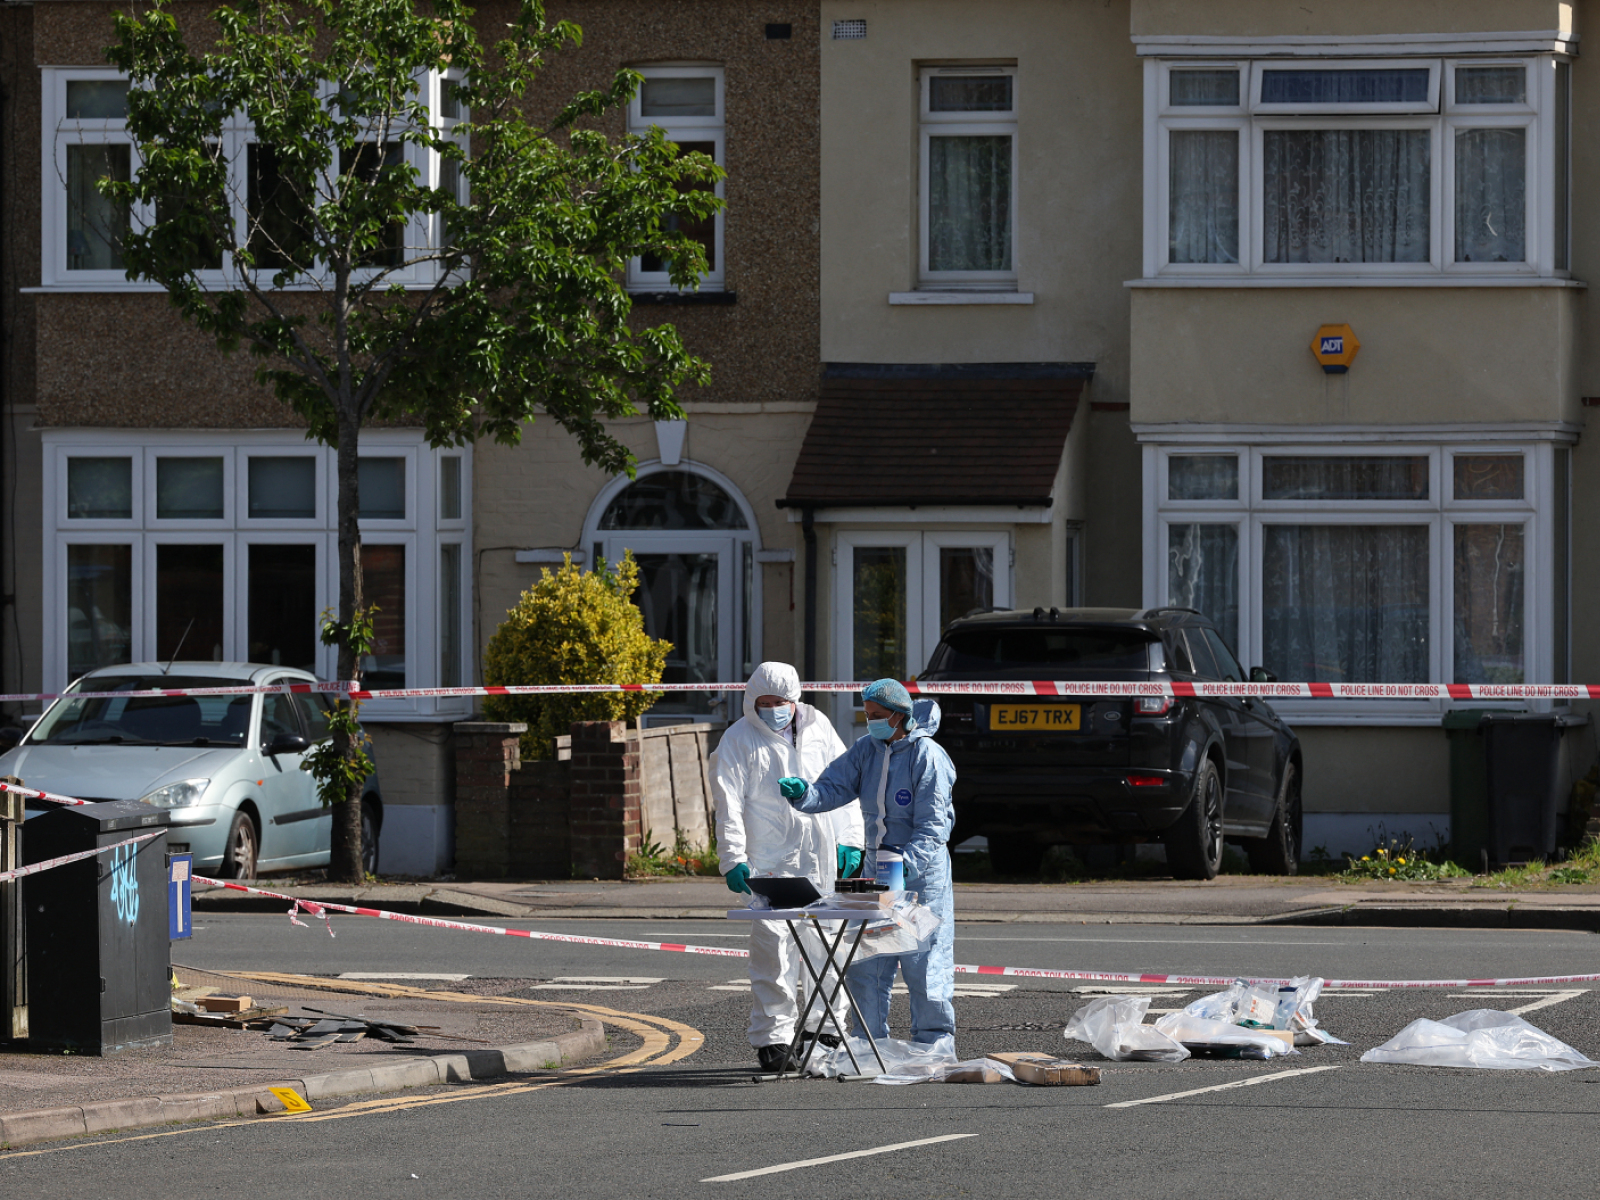 tödliche attacke in london: hintergründe weiter unklar